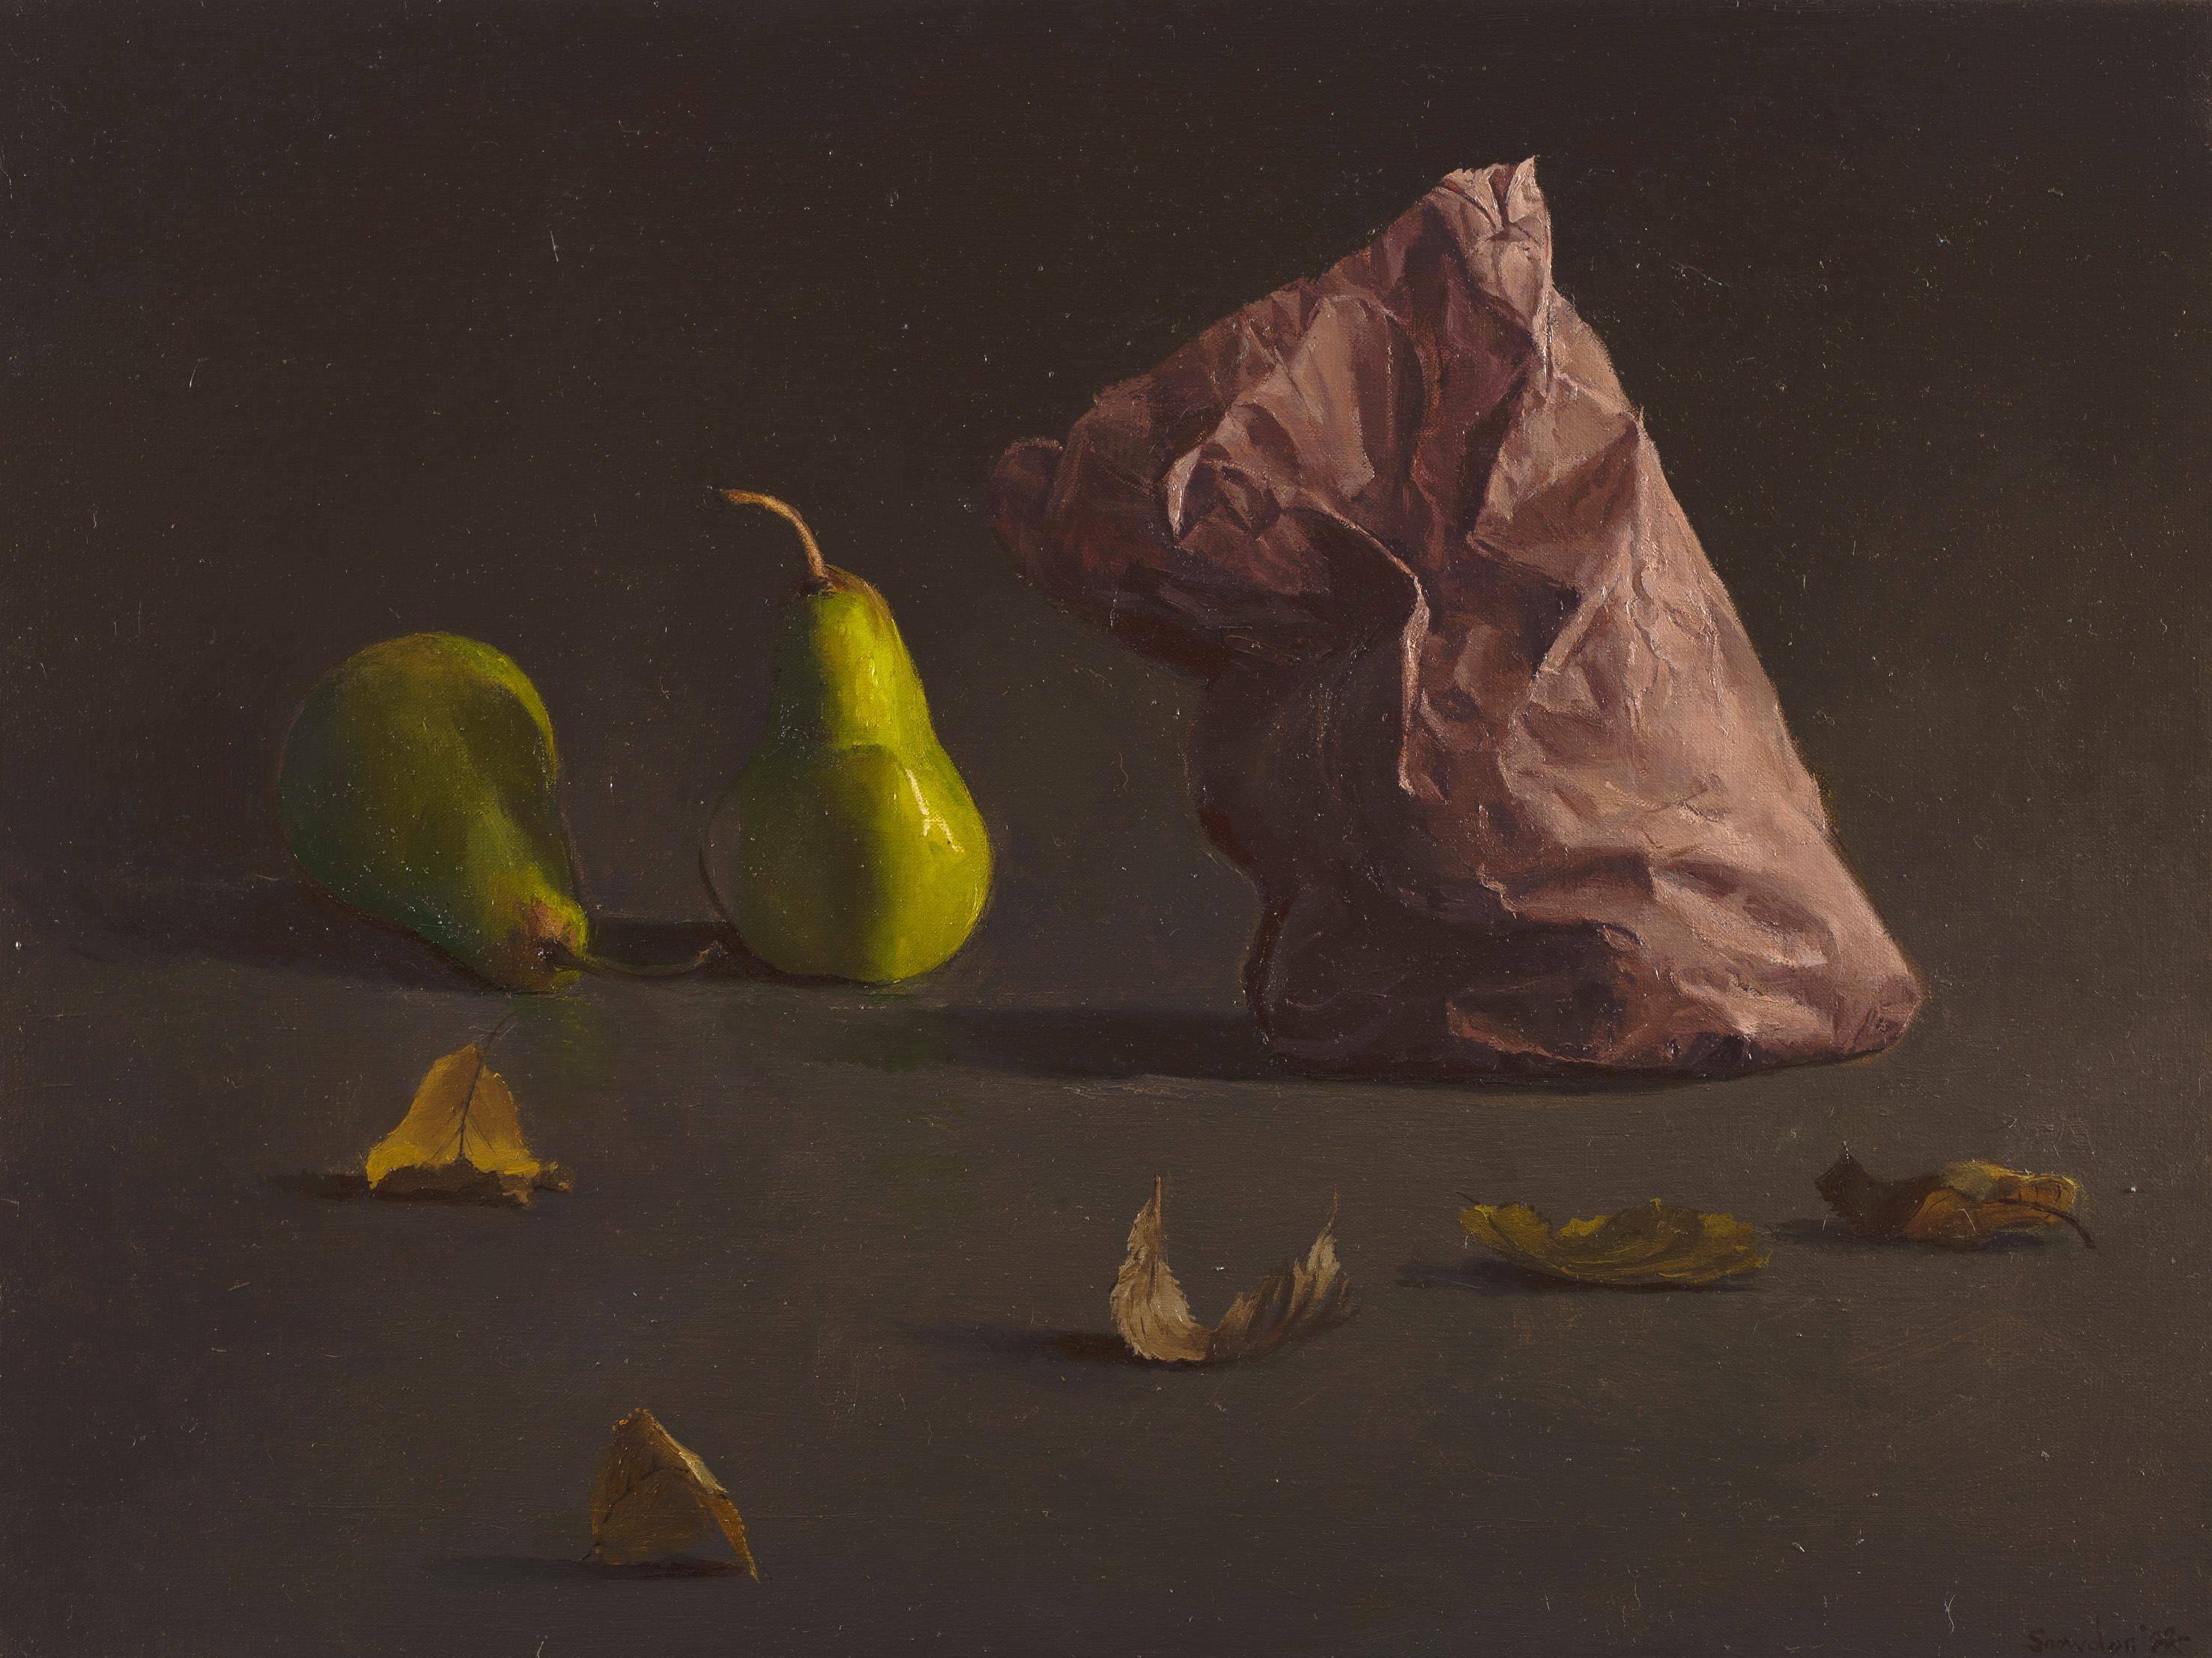 Originalkunstwerk auf Leinen des bekannten australischen Malers Tim SNOWDON. 

Snowdon's  2022 Die Ausstellung "Conversations" bezieht sich auf die Art und Weise, wie unbelebte Objekte innerhalb von Stillleben-Kompositionen miteinander "sprechen"